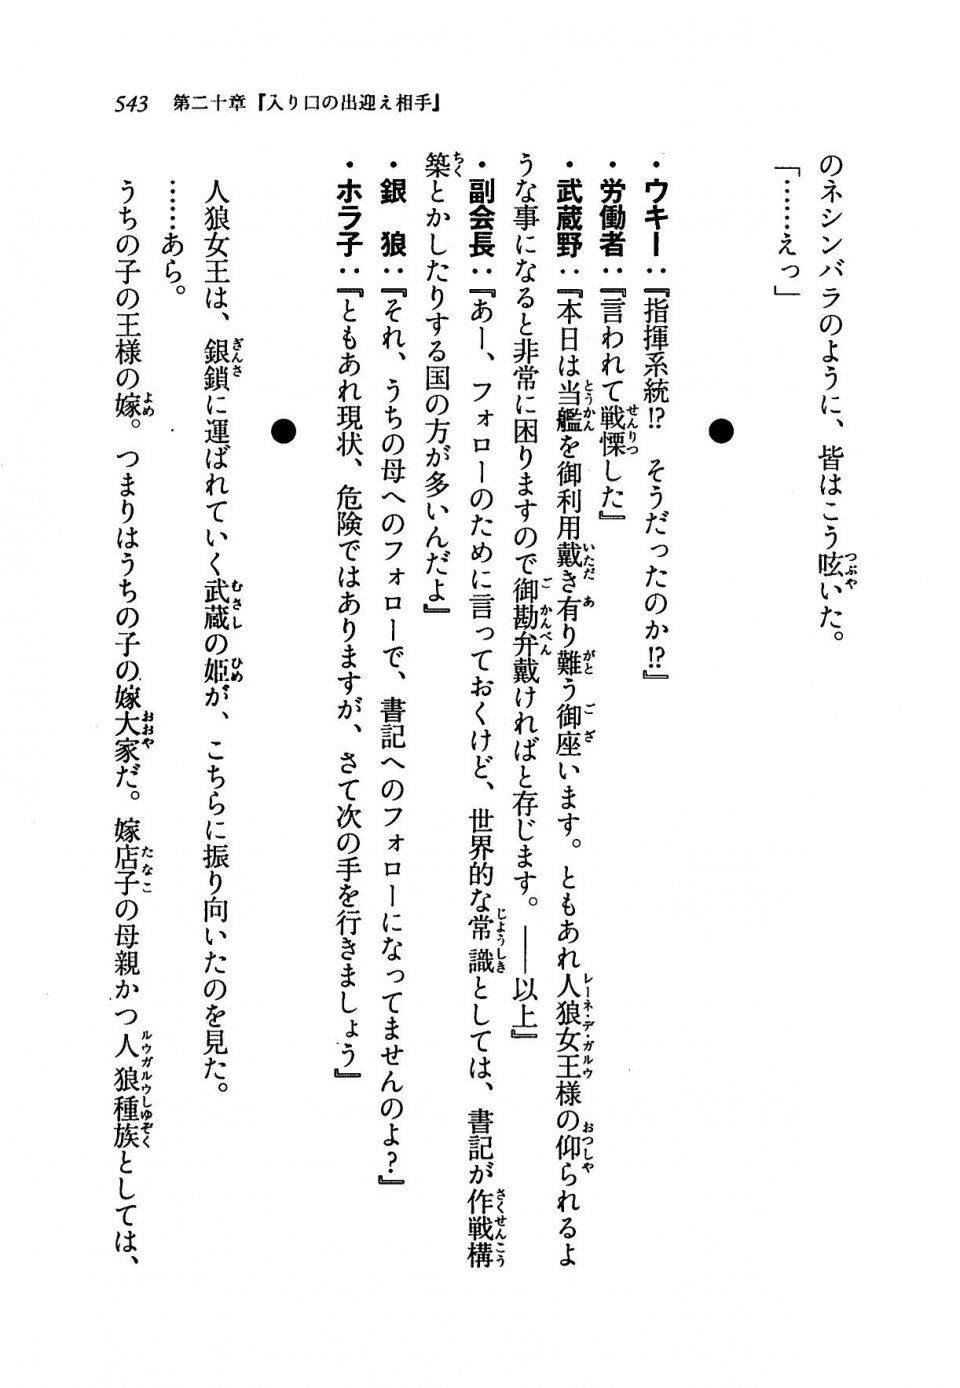 Kyoukai Senjou no Horizon LN Vol 19(8A) - Photo #543